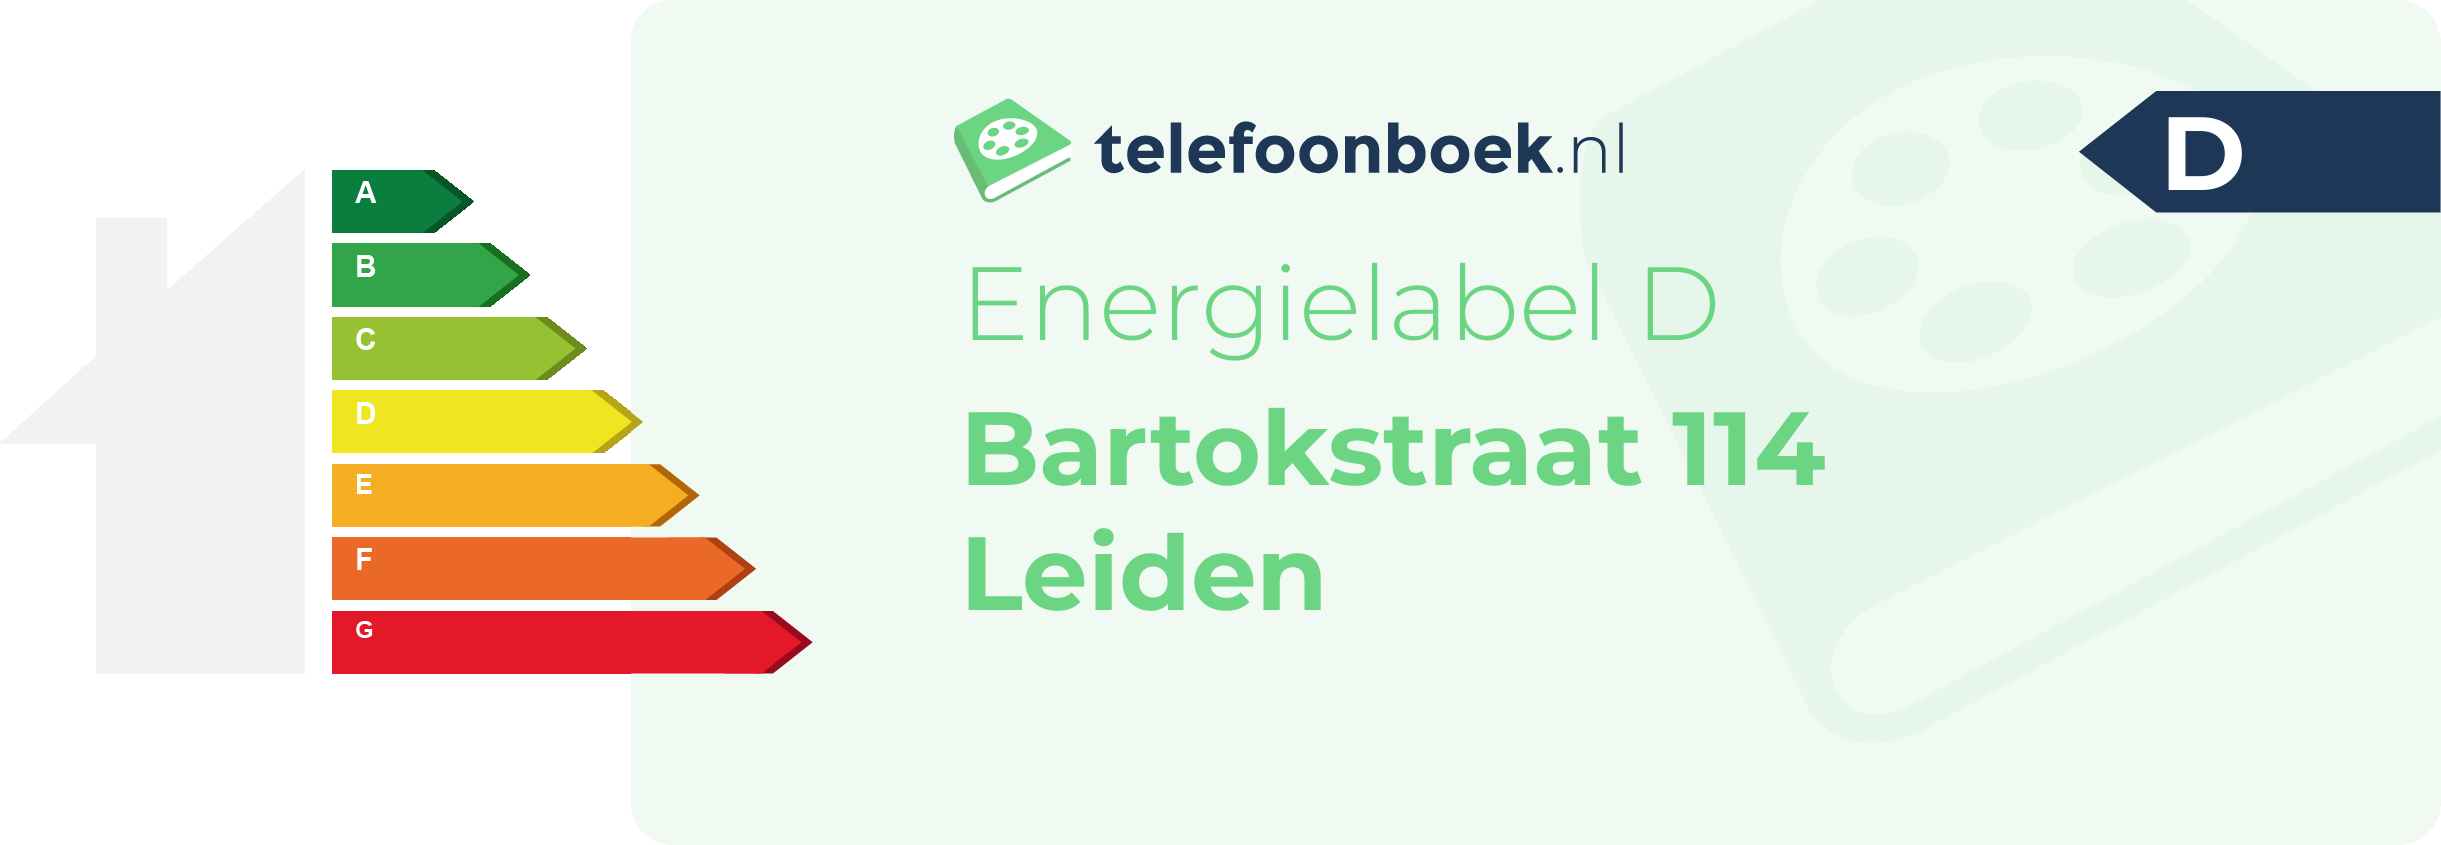 Energielabel Bartokstraat 114 Leiden